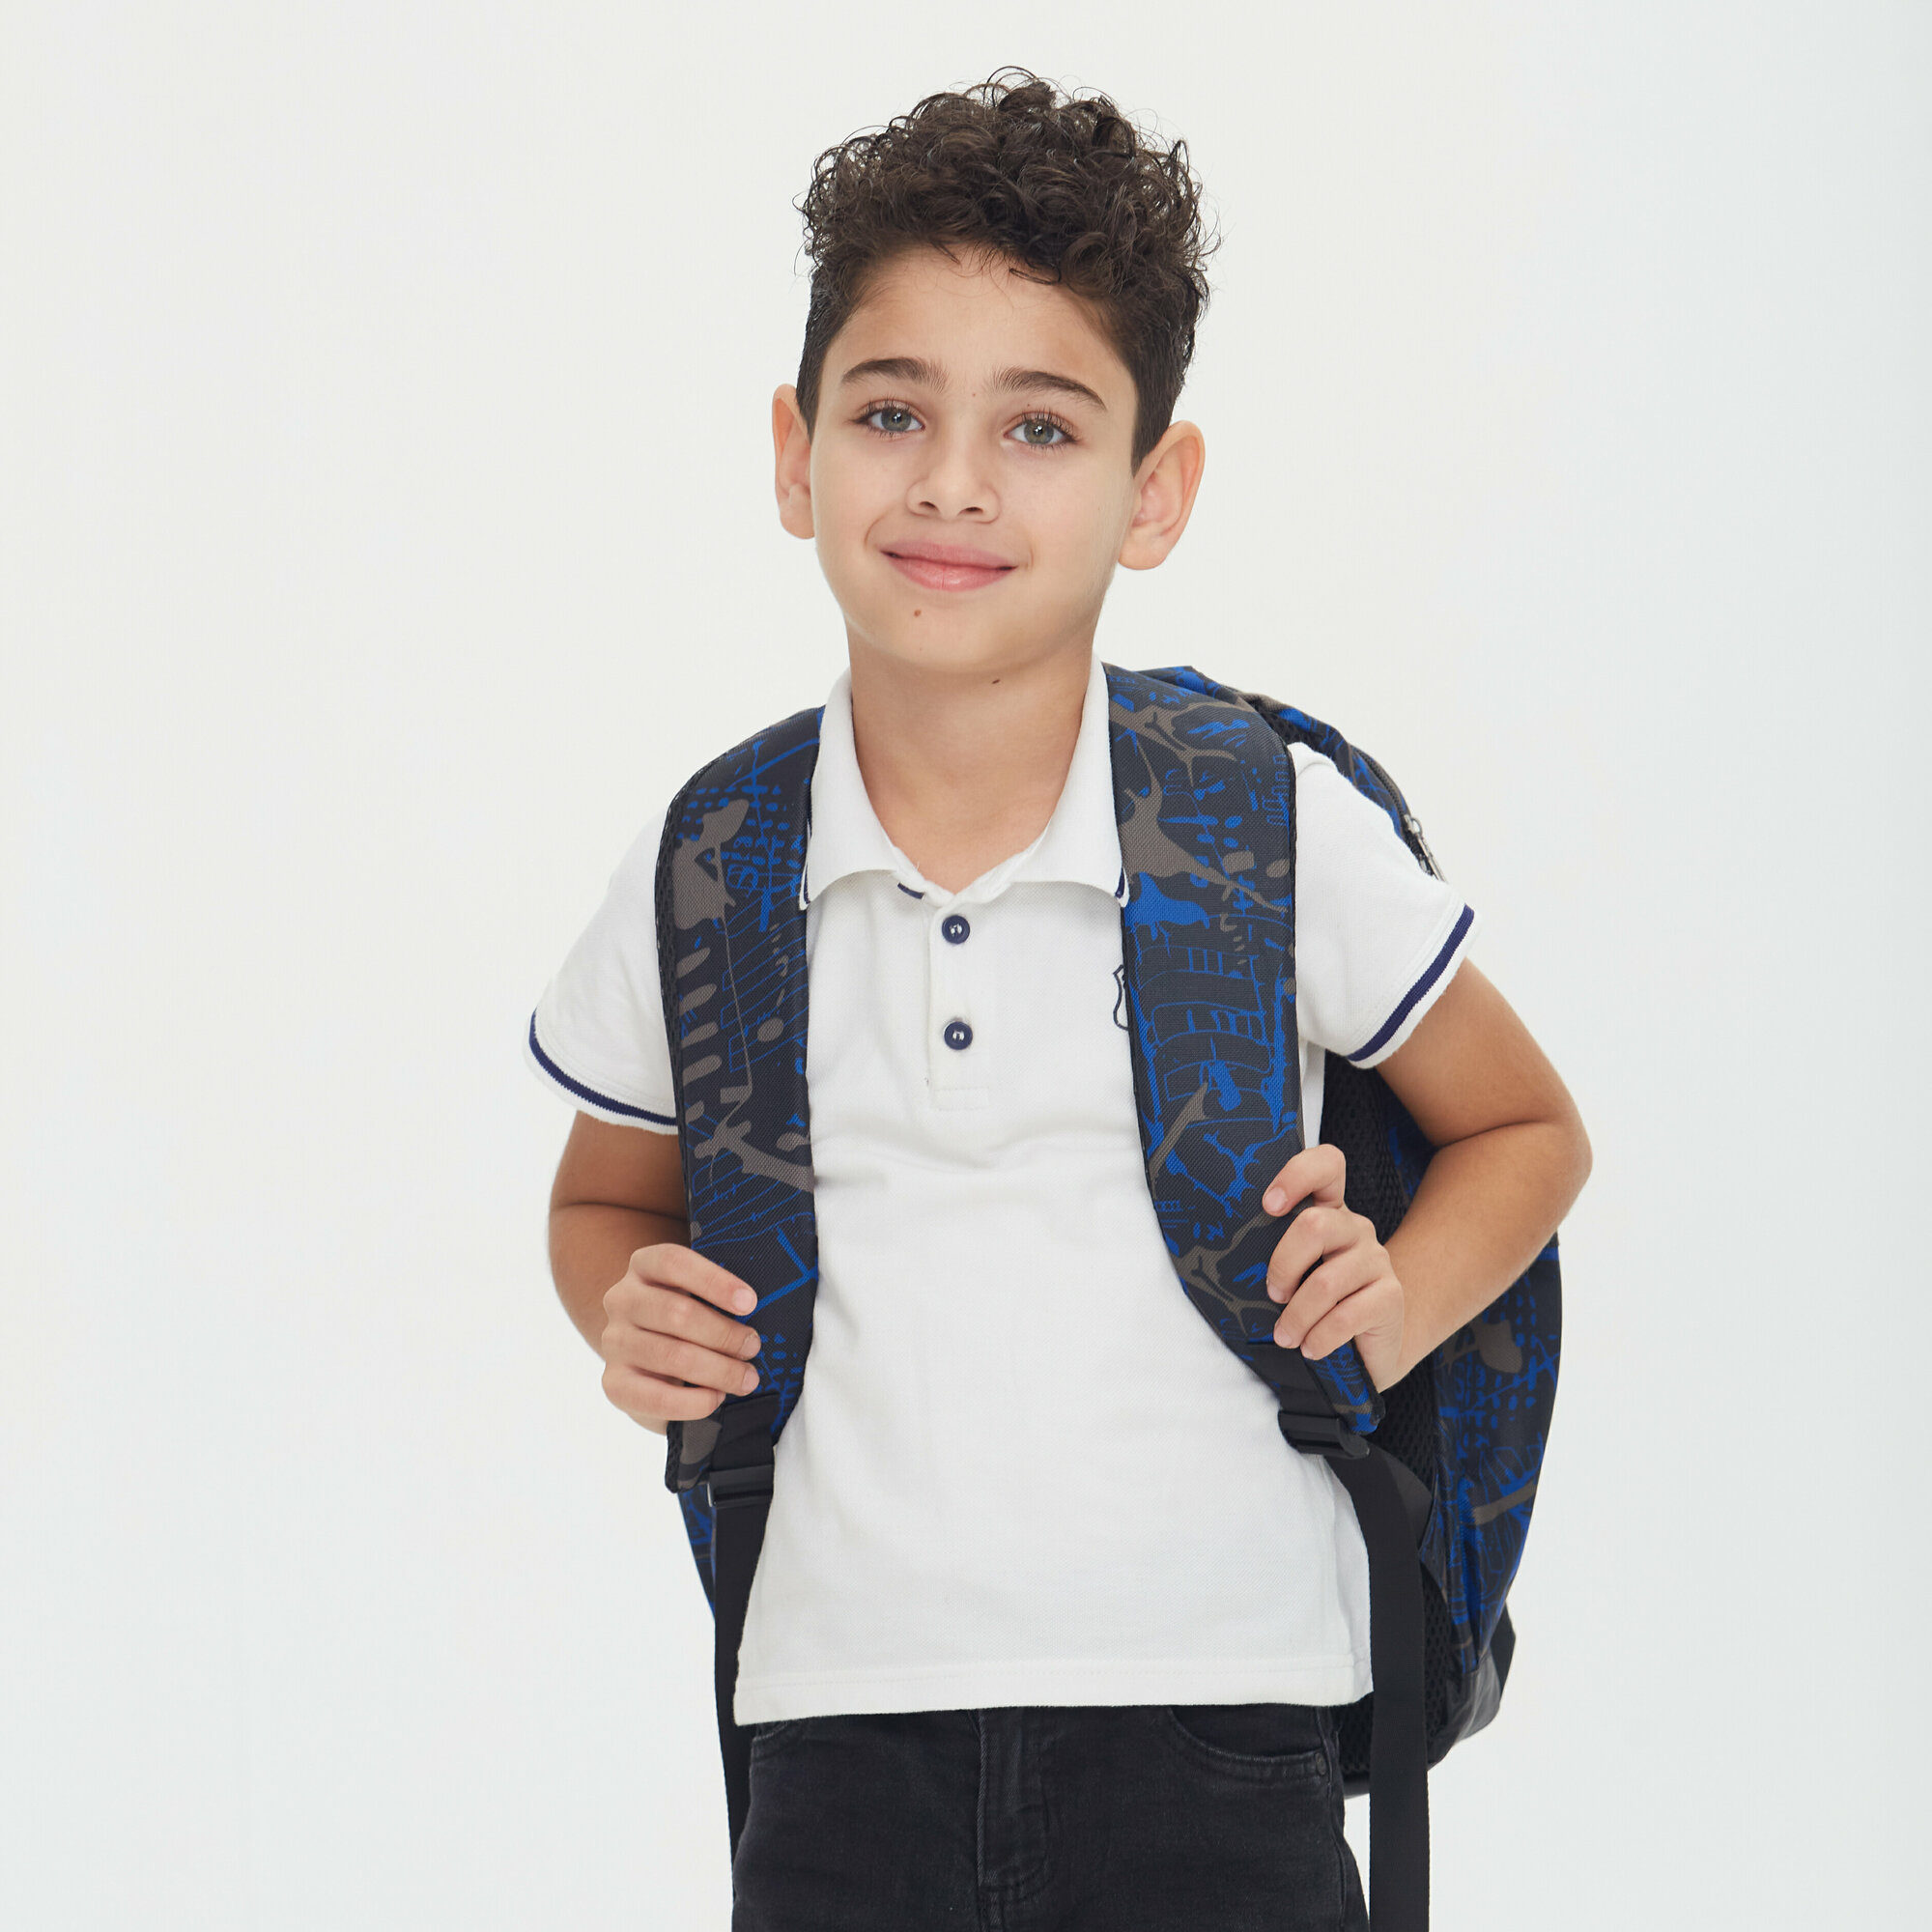 Школьный детский рюкзак для мальчика / рюкзак мужской / 3 предмета